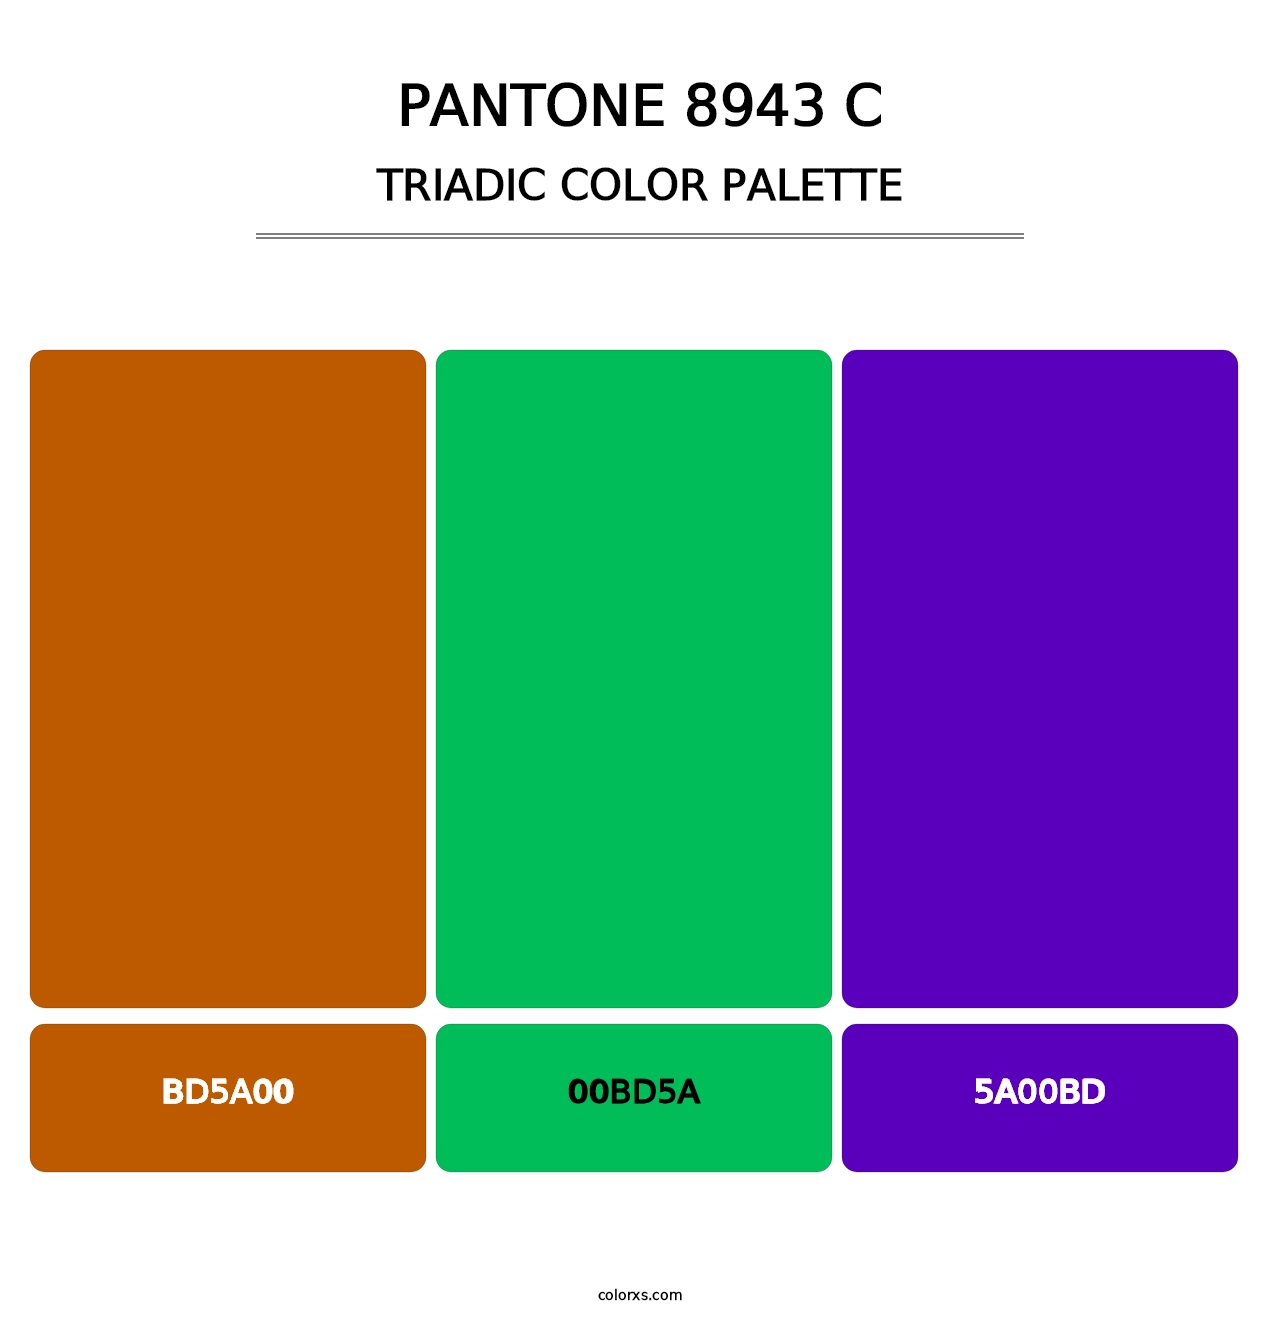 PANTONE 8943 C - Triadic Color Palette